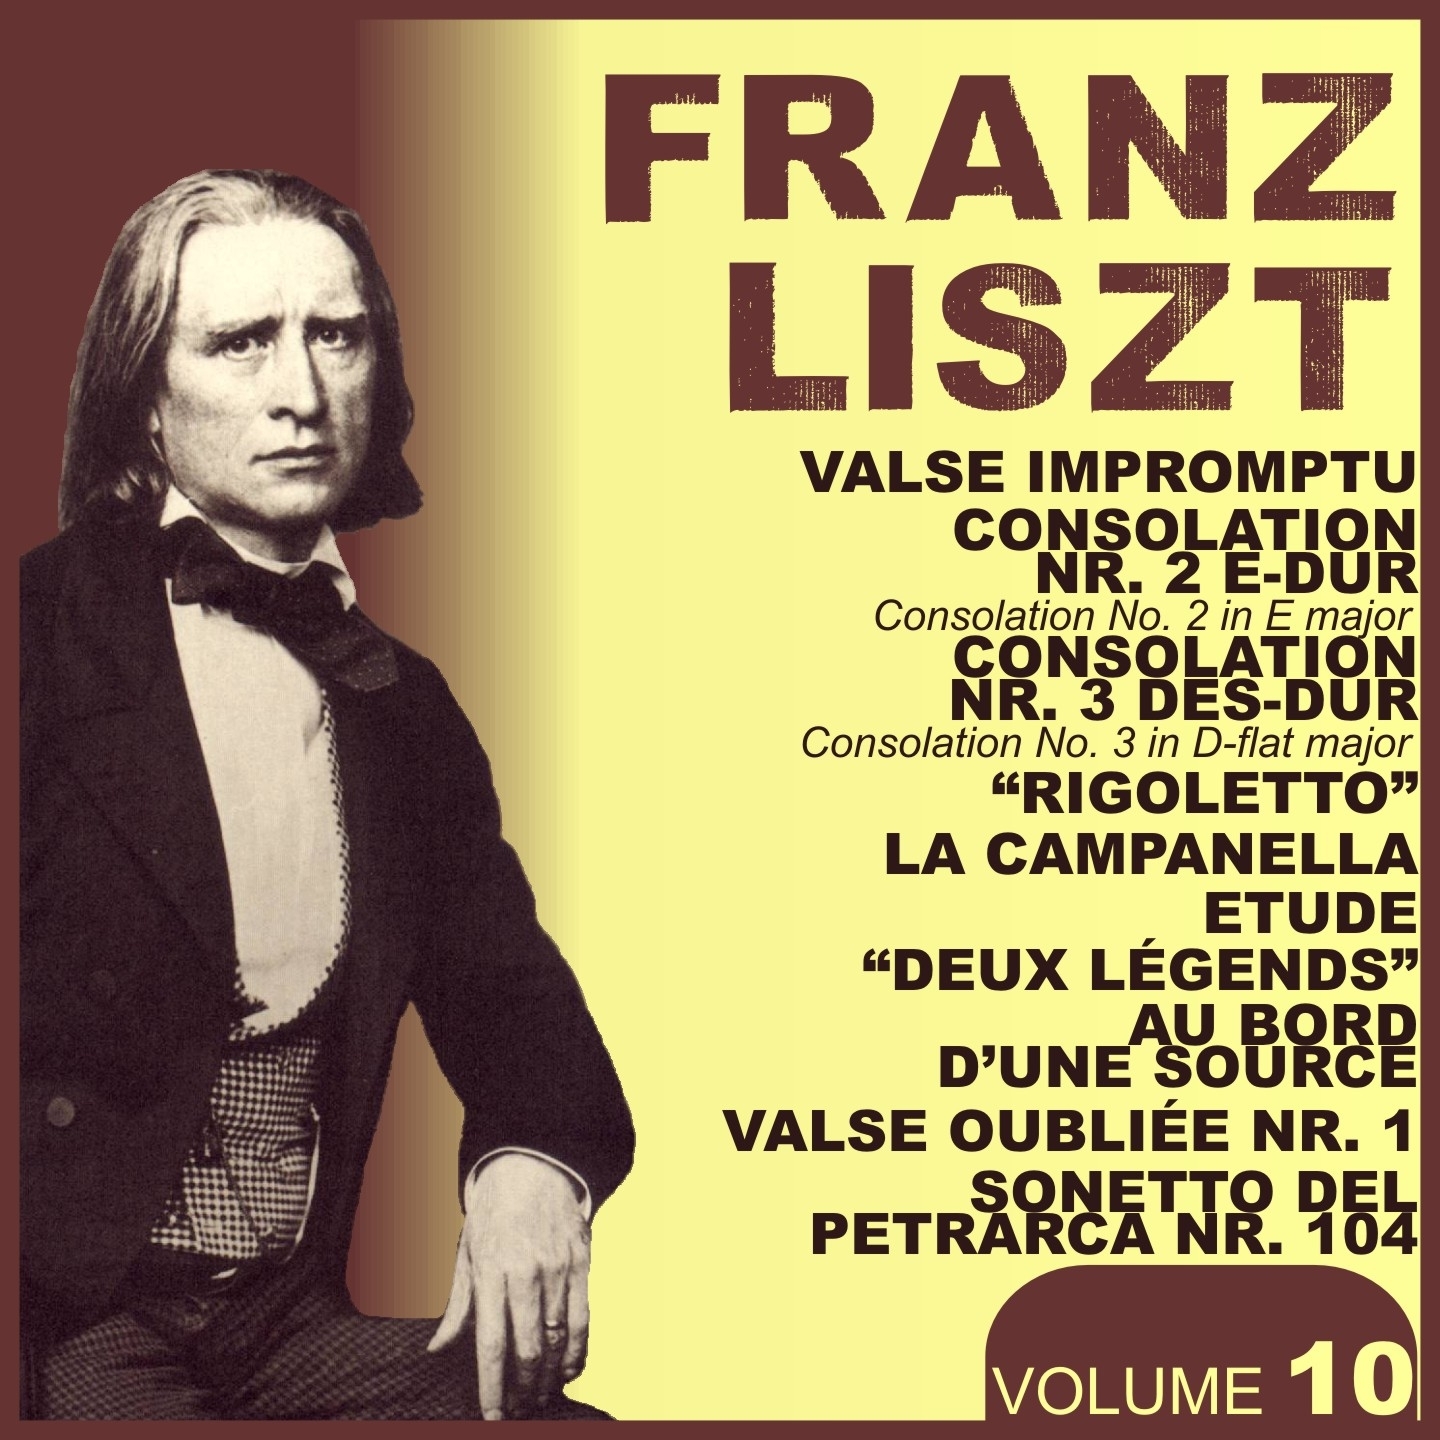 Liszt, Vol. 10 : Valse Impromptu, Consolation No. 2  3, Rigoletto, La Campanella, Deux Le gends, Au bord d' une source, Valse oublie e, Sonetto No. 104